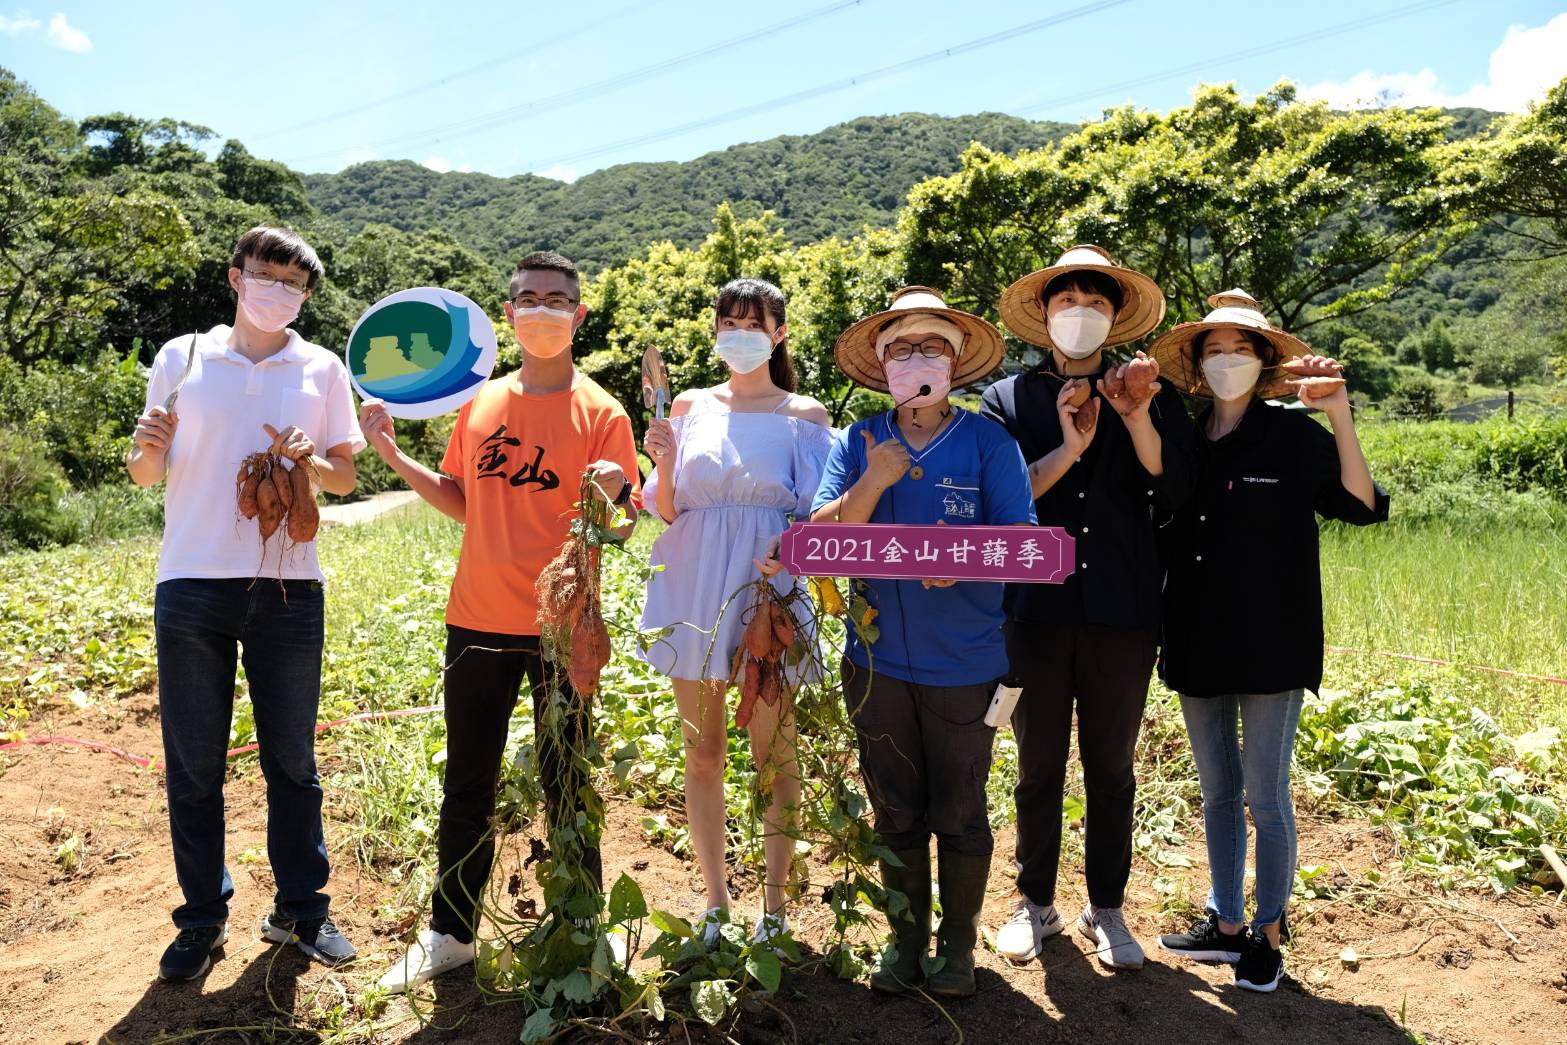 2021 Jinshan sweet potato season line to buy and run you buy sweet potato I give Gogoro!